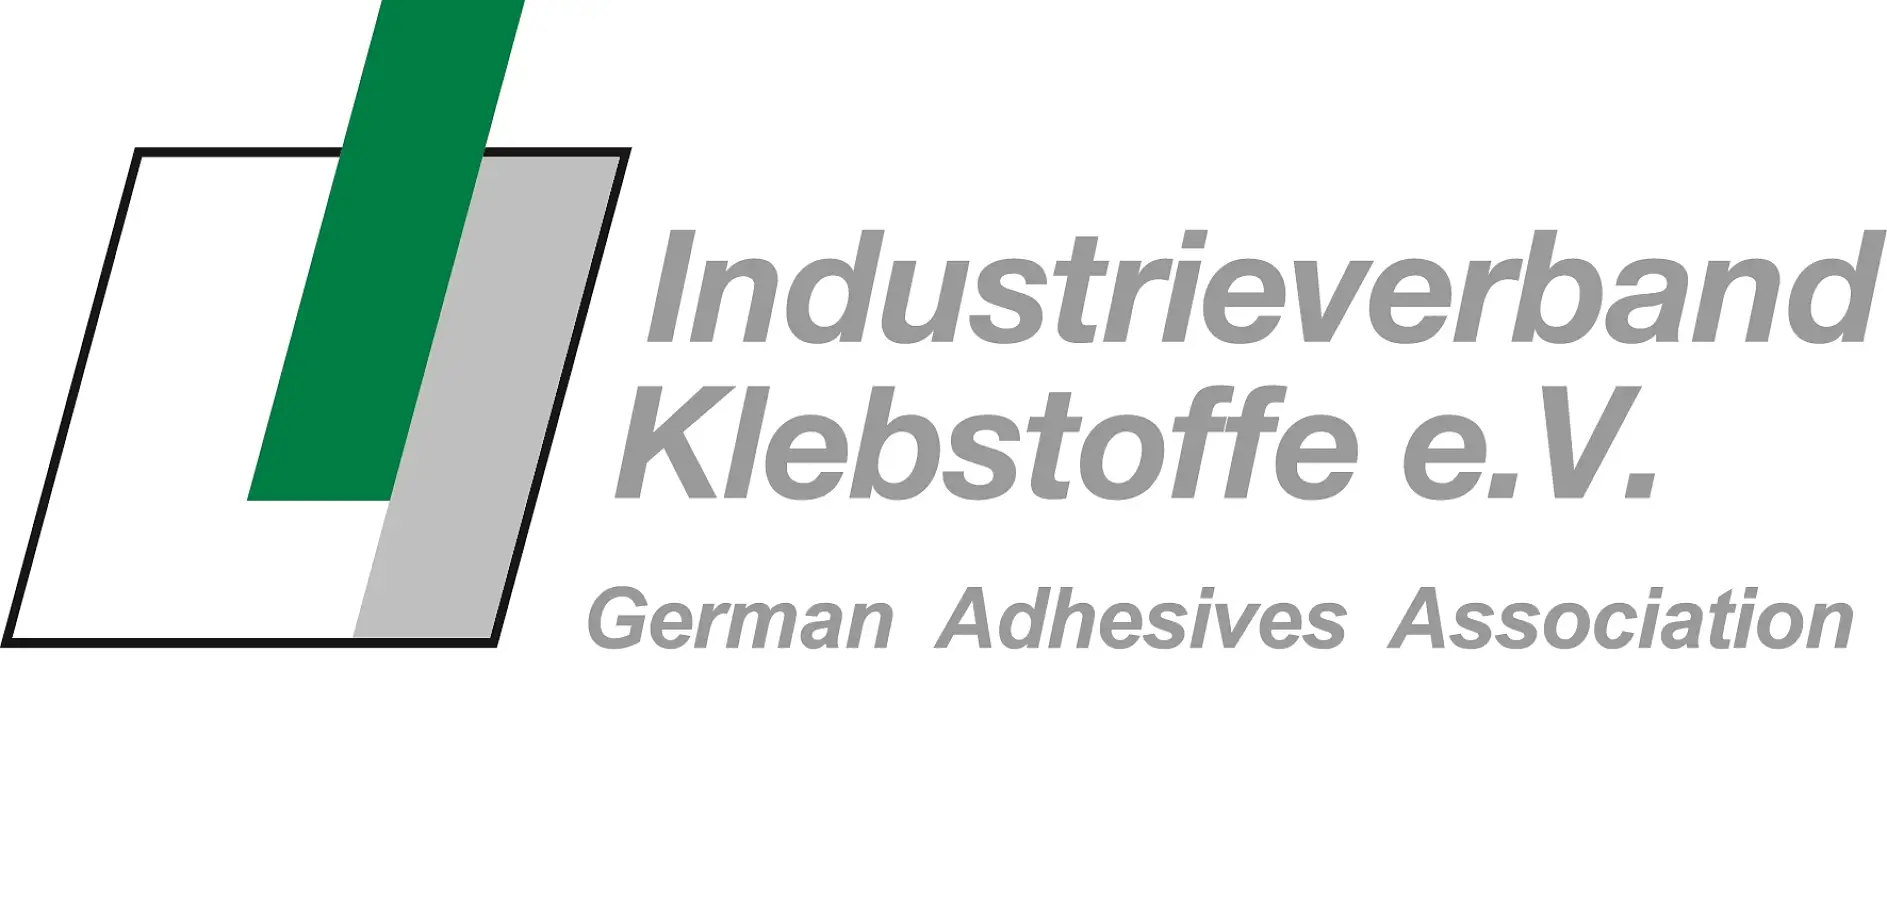 German Adhesives Association är världen största – och med avseende på dess breda tjänsteportfölj på samma gång världsledande – nationella organisation inom området självhäftande fogningsteknik.